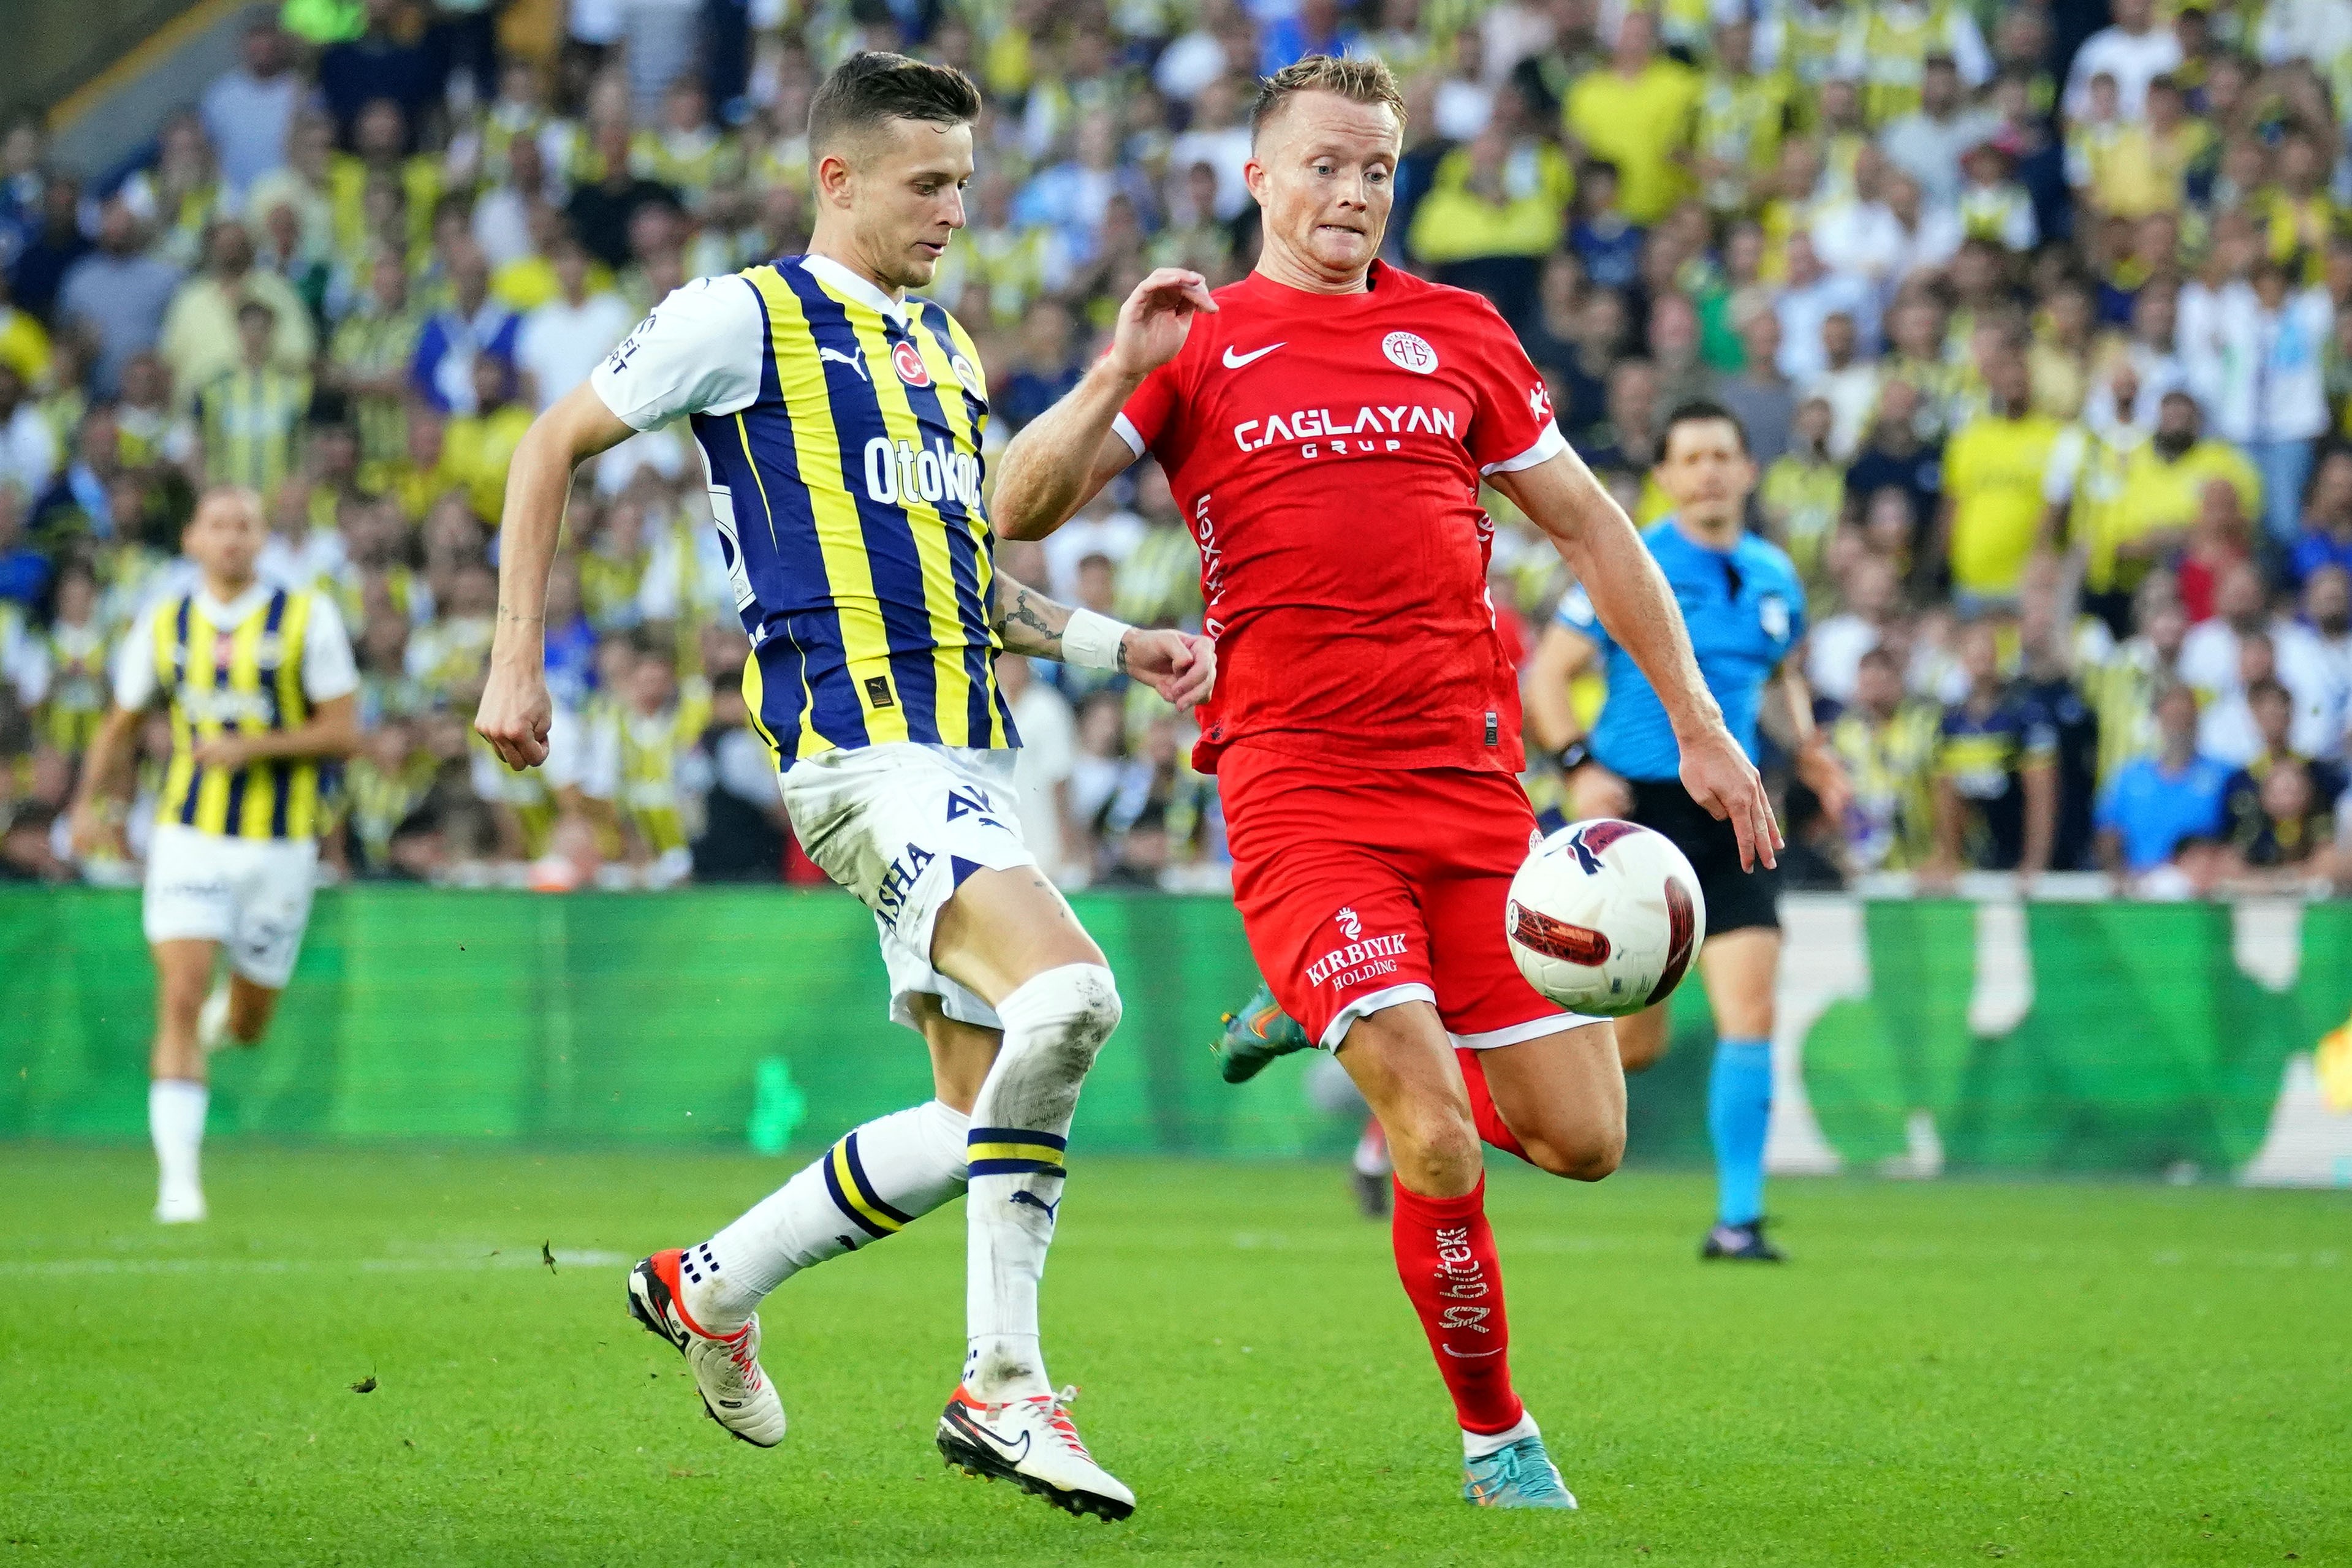 Antalyaspor Fenerbahçe ilk 11 maç kadroları nasıl olacak?